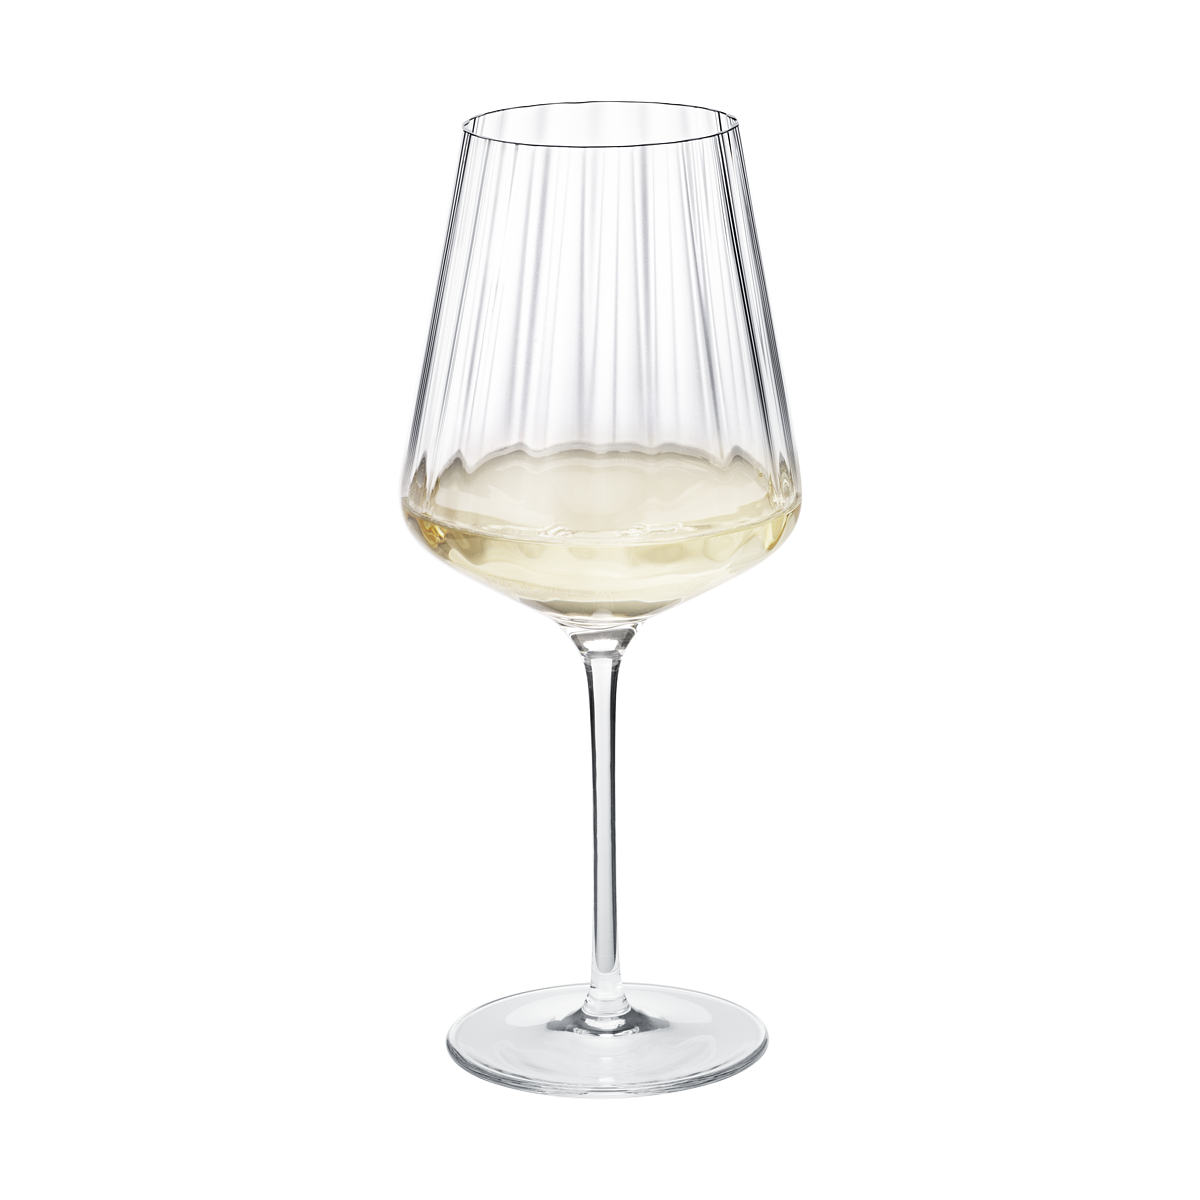 Georg Jensen White Wine Glass 6pcs BERNADOTTE